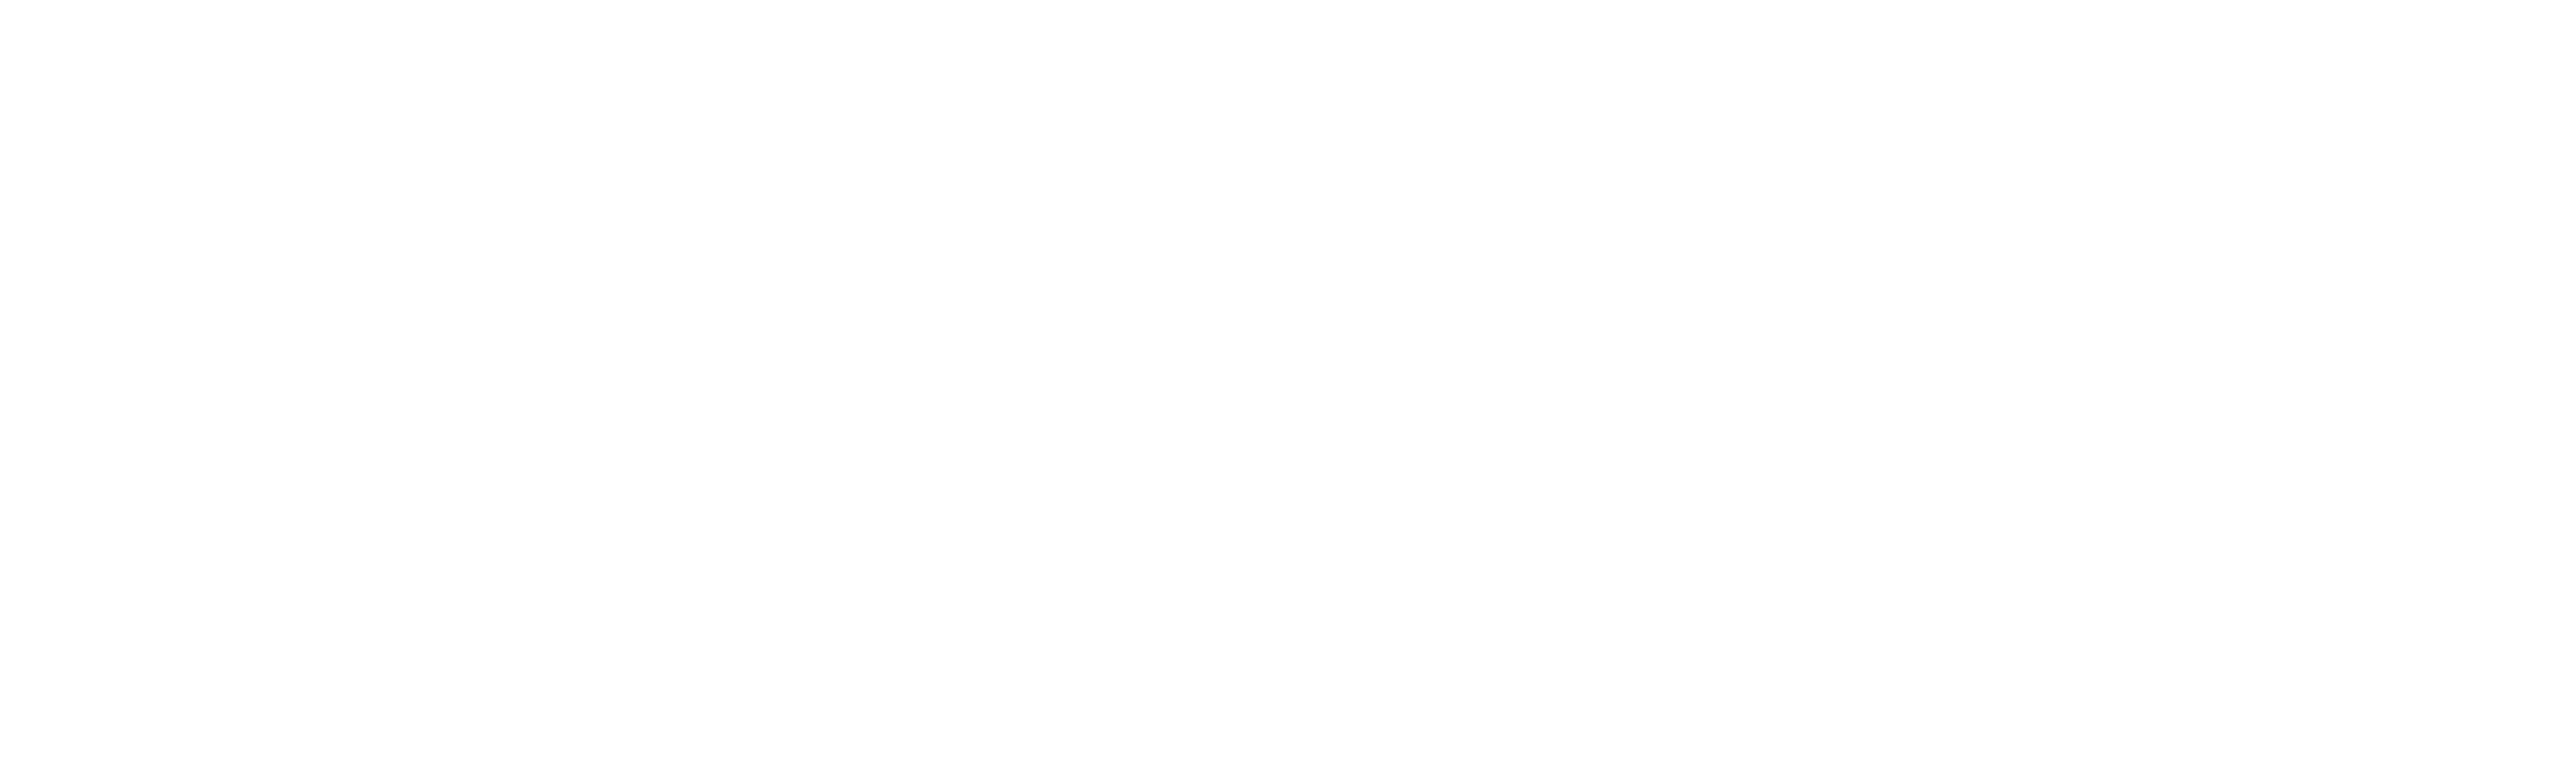 Black-Forest-white-word-logo